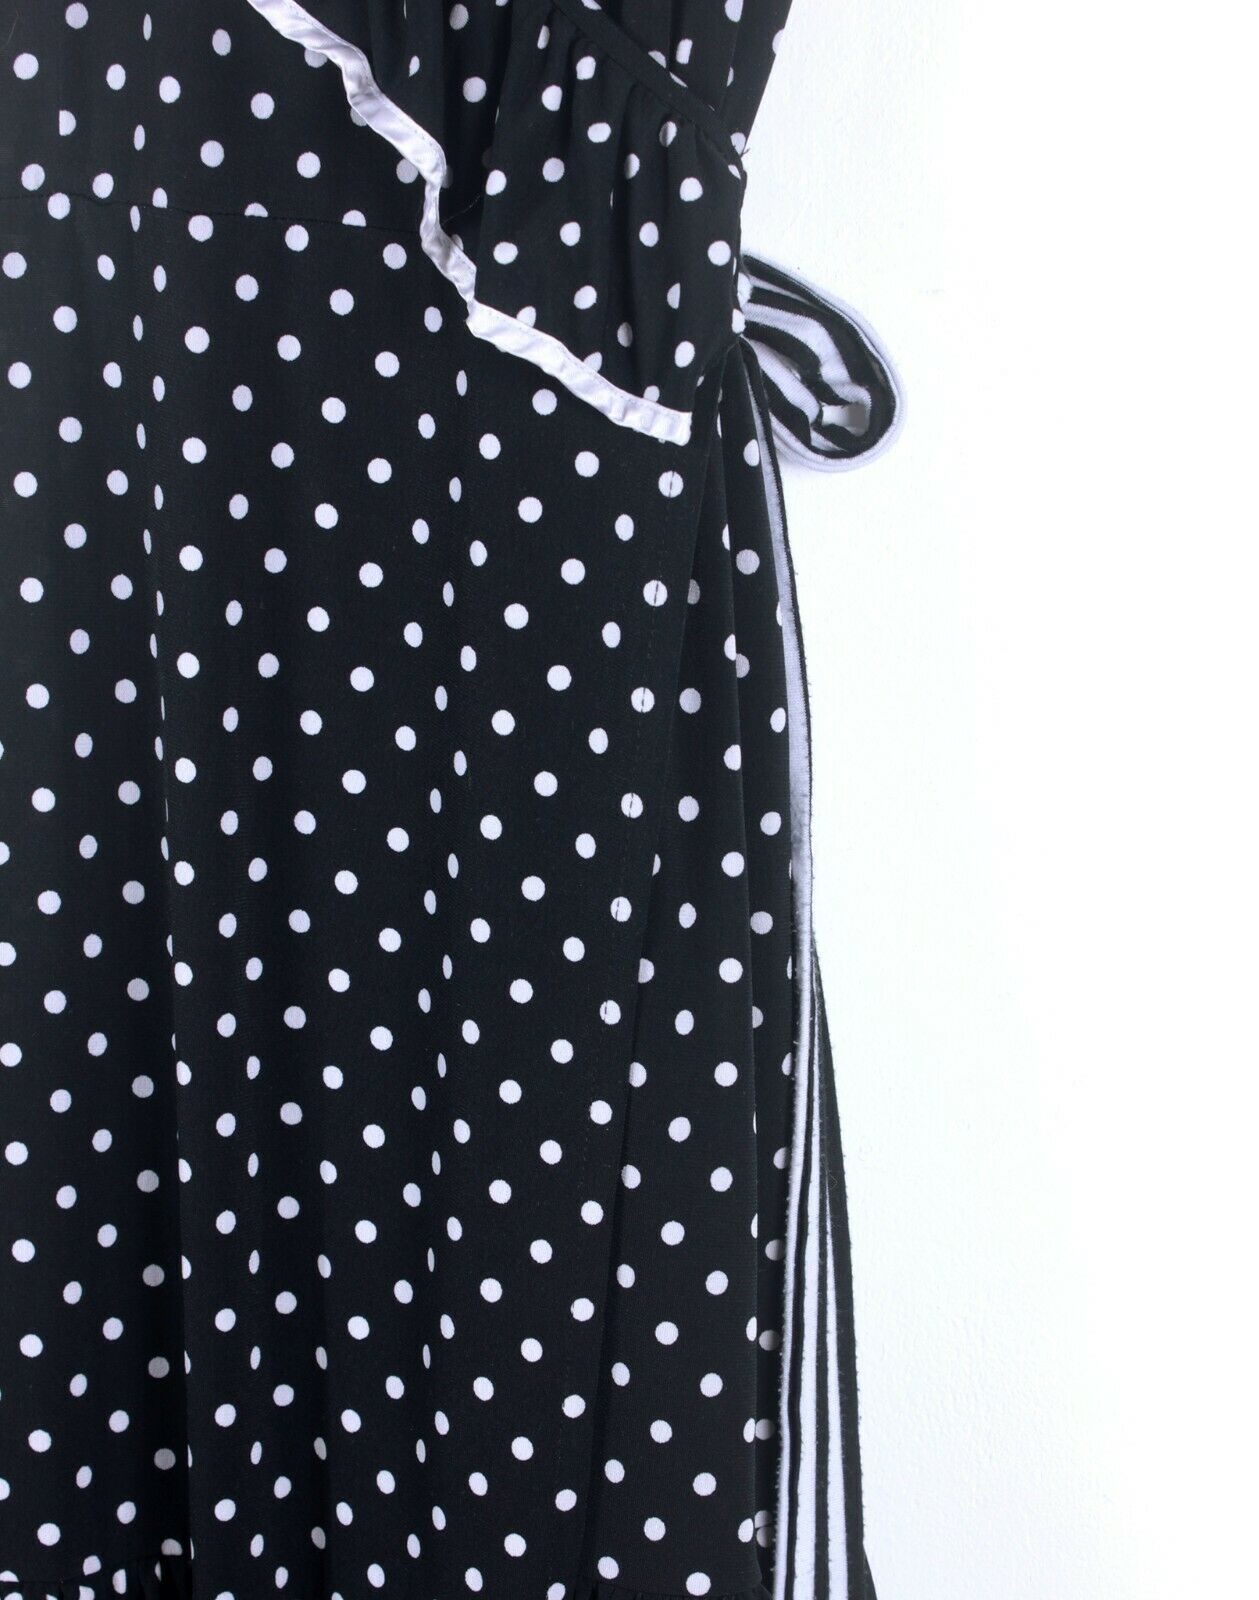 Shona Joy Black Polka Dot Wrap Dress - Size 8